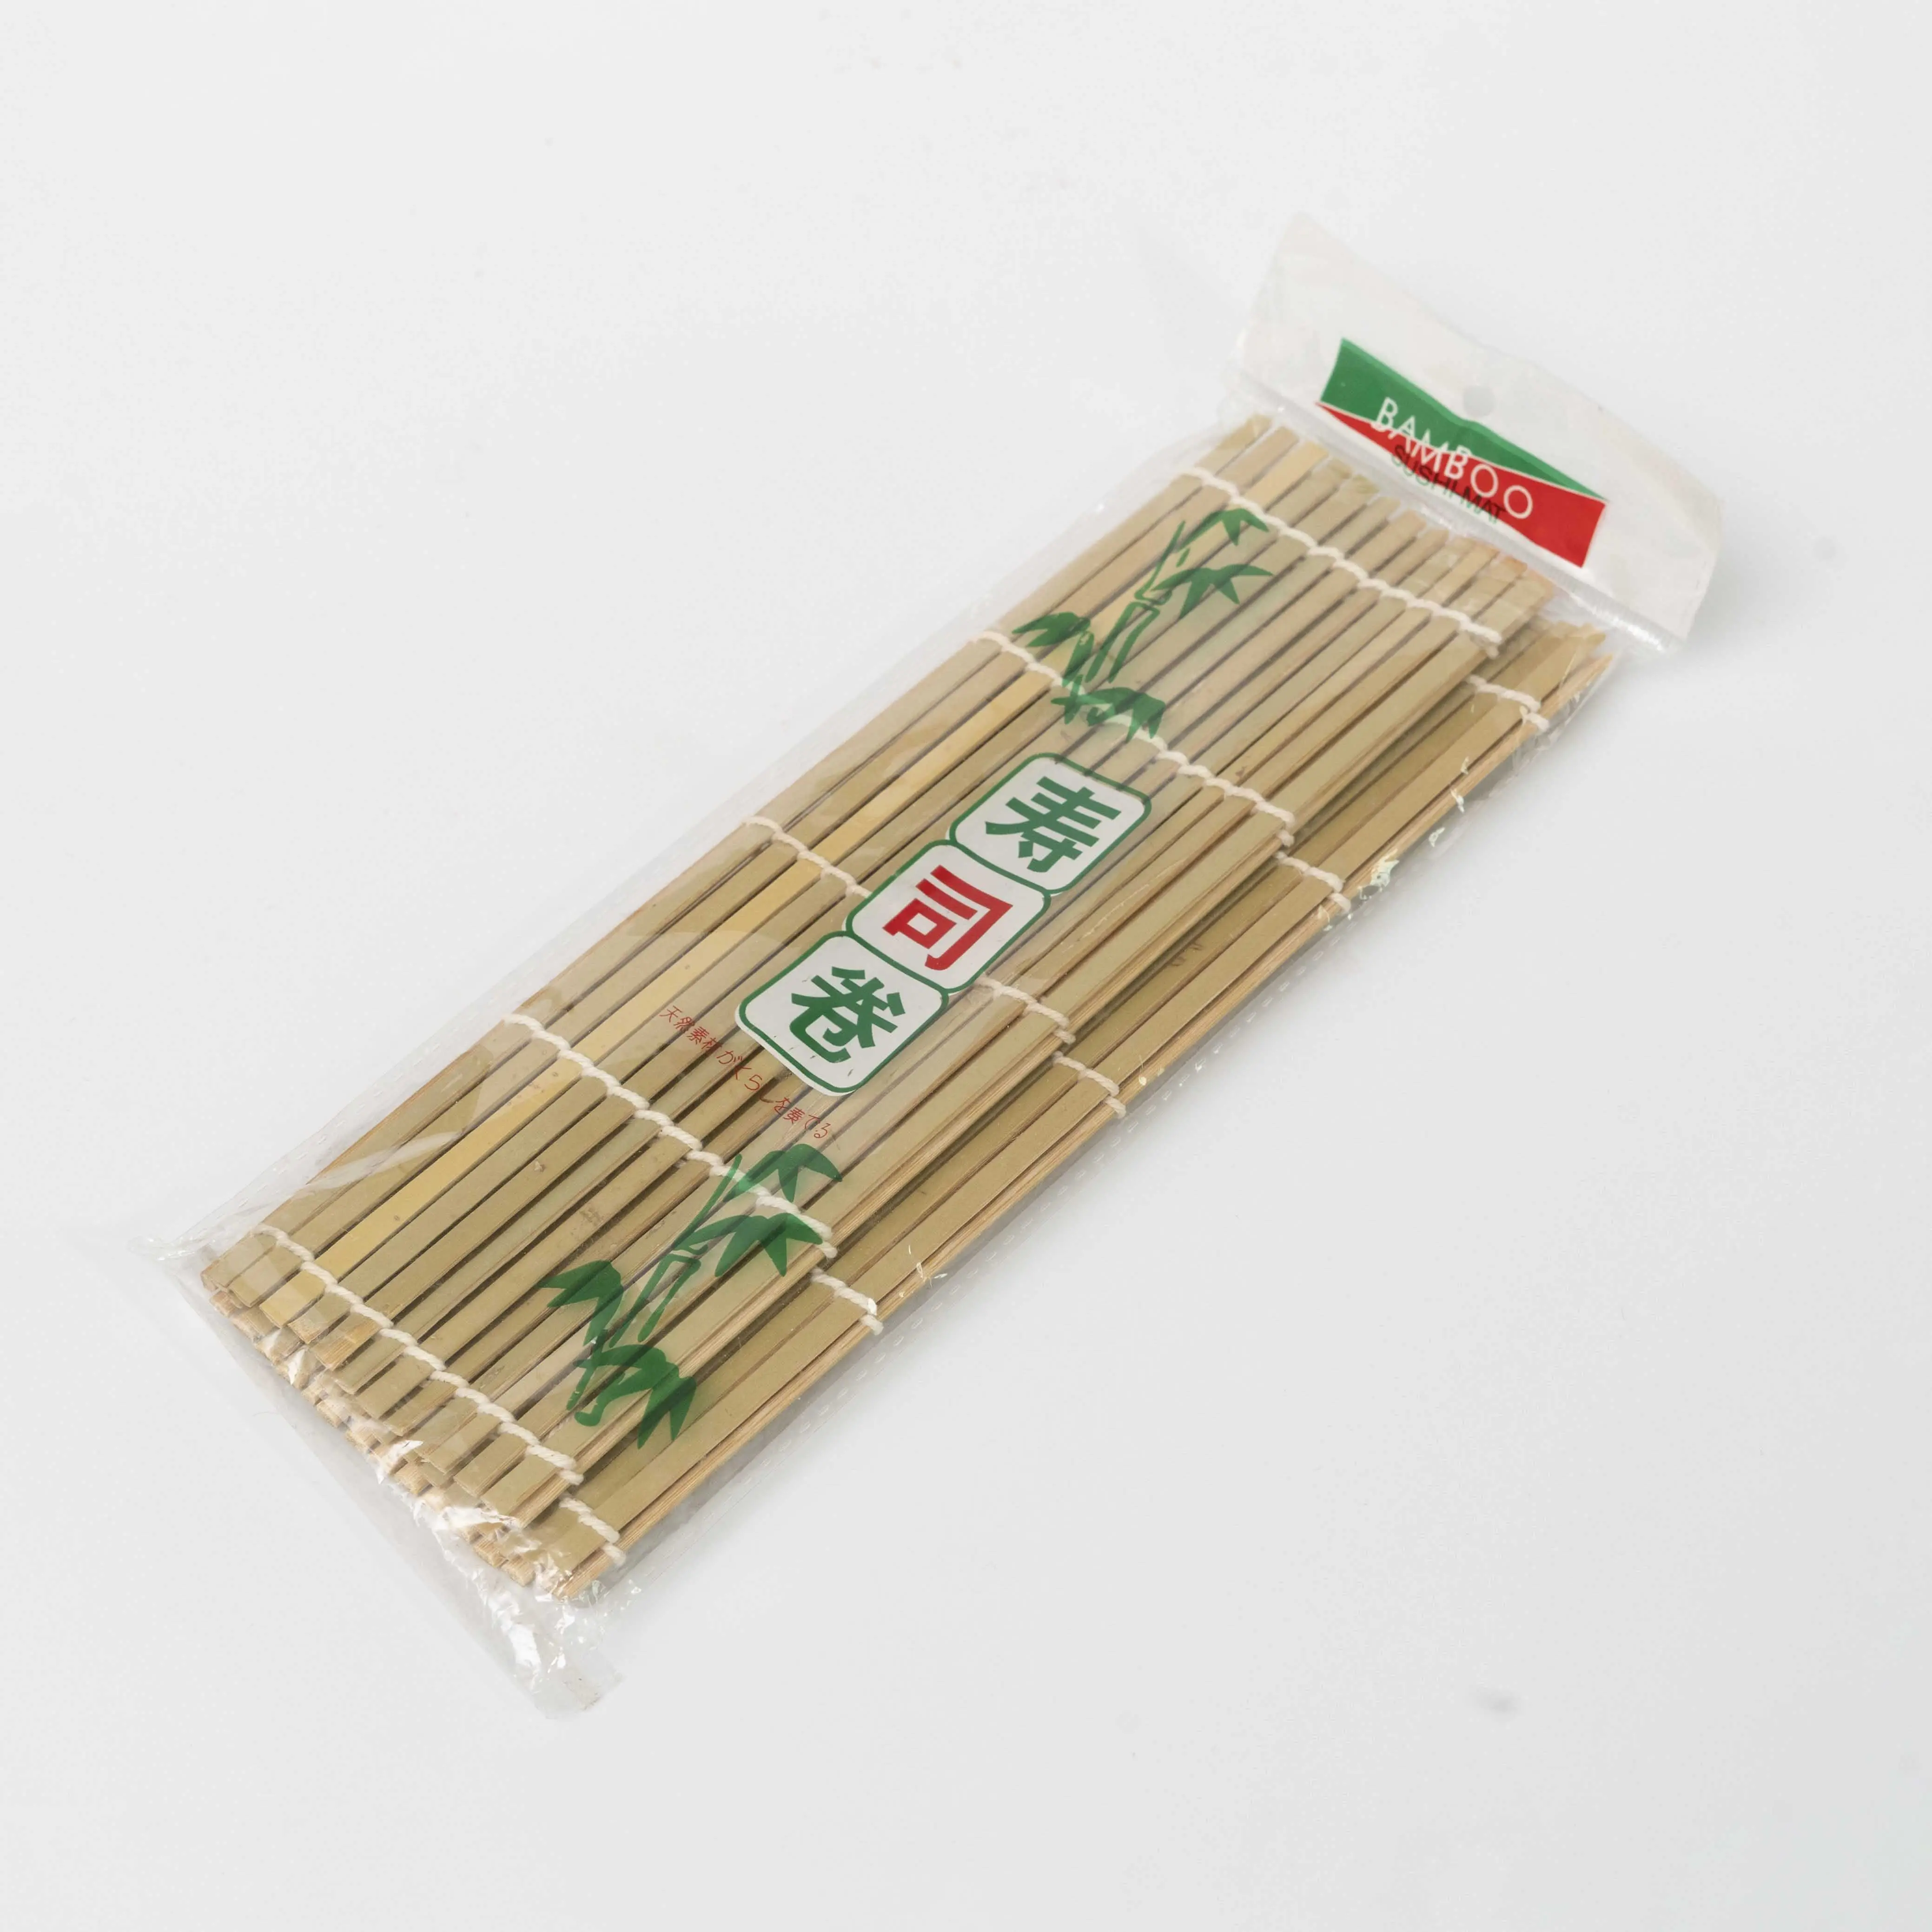 Tikar Sushi bambu buatan tangan-desain stabil miring dengan tali ikat untuk daya tahan dan penanganan mudah